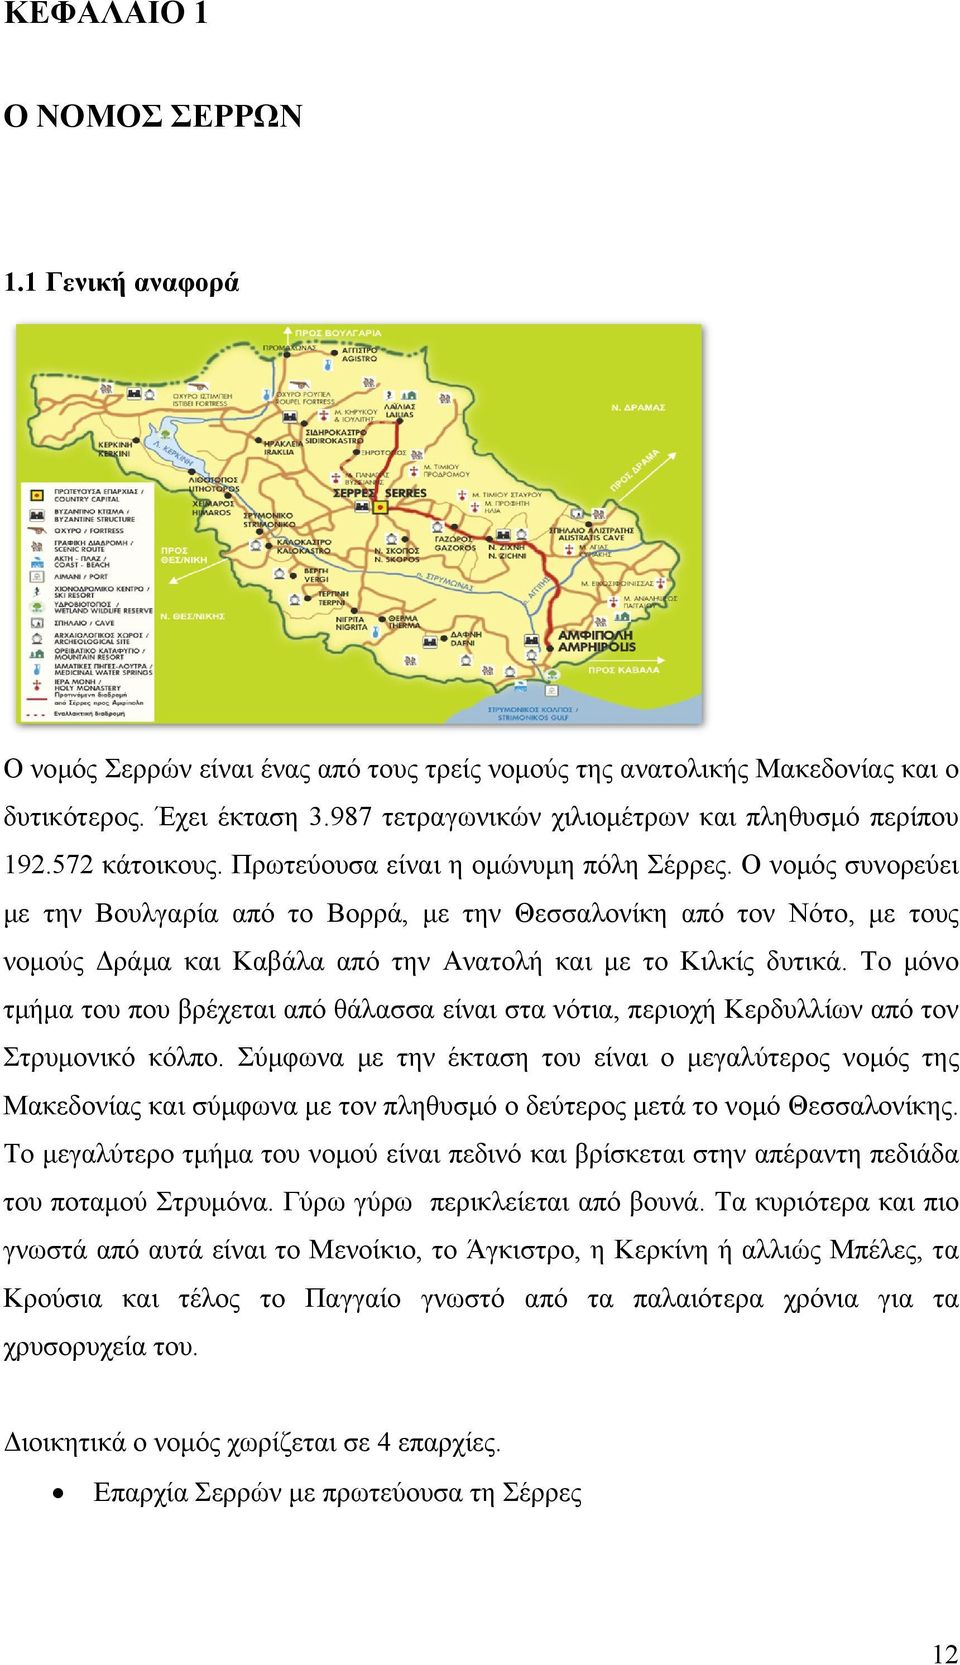 Ο νομός συνορεύει με την Βουλγαρία από το Βορρά, με την Θεσσαλονίκη από τον Νότο, με τους νομούς Δράμα και Καβάλα από την Ανατολή και με το Κιλκίς δυτικά.